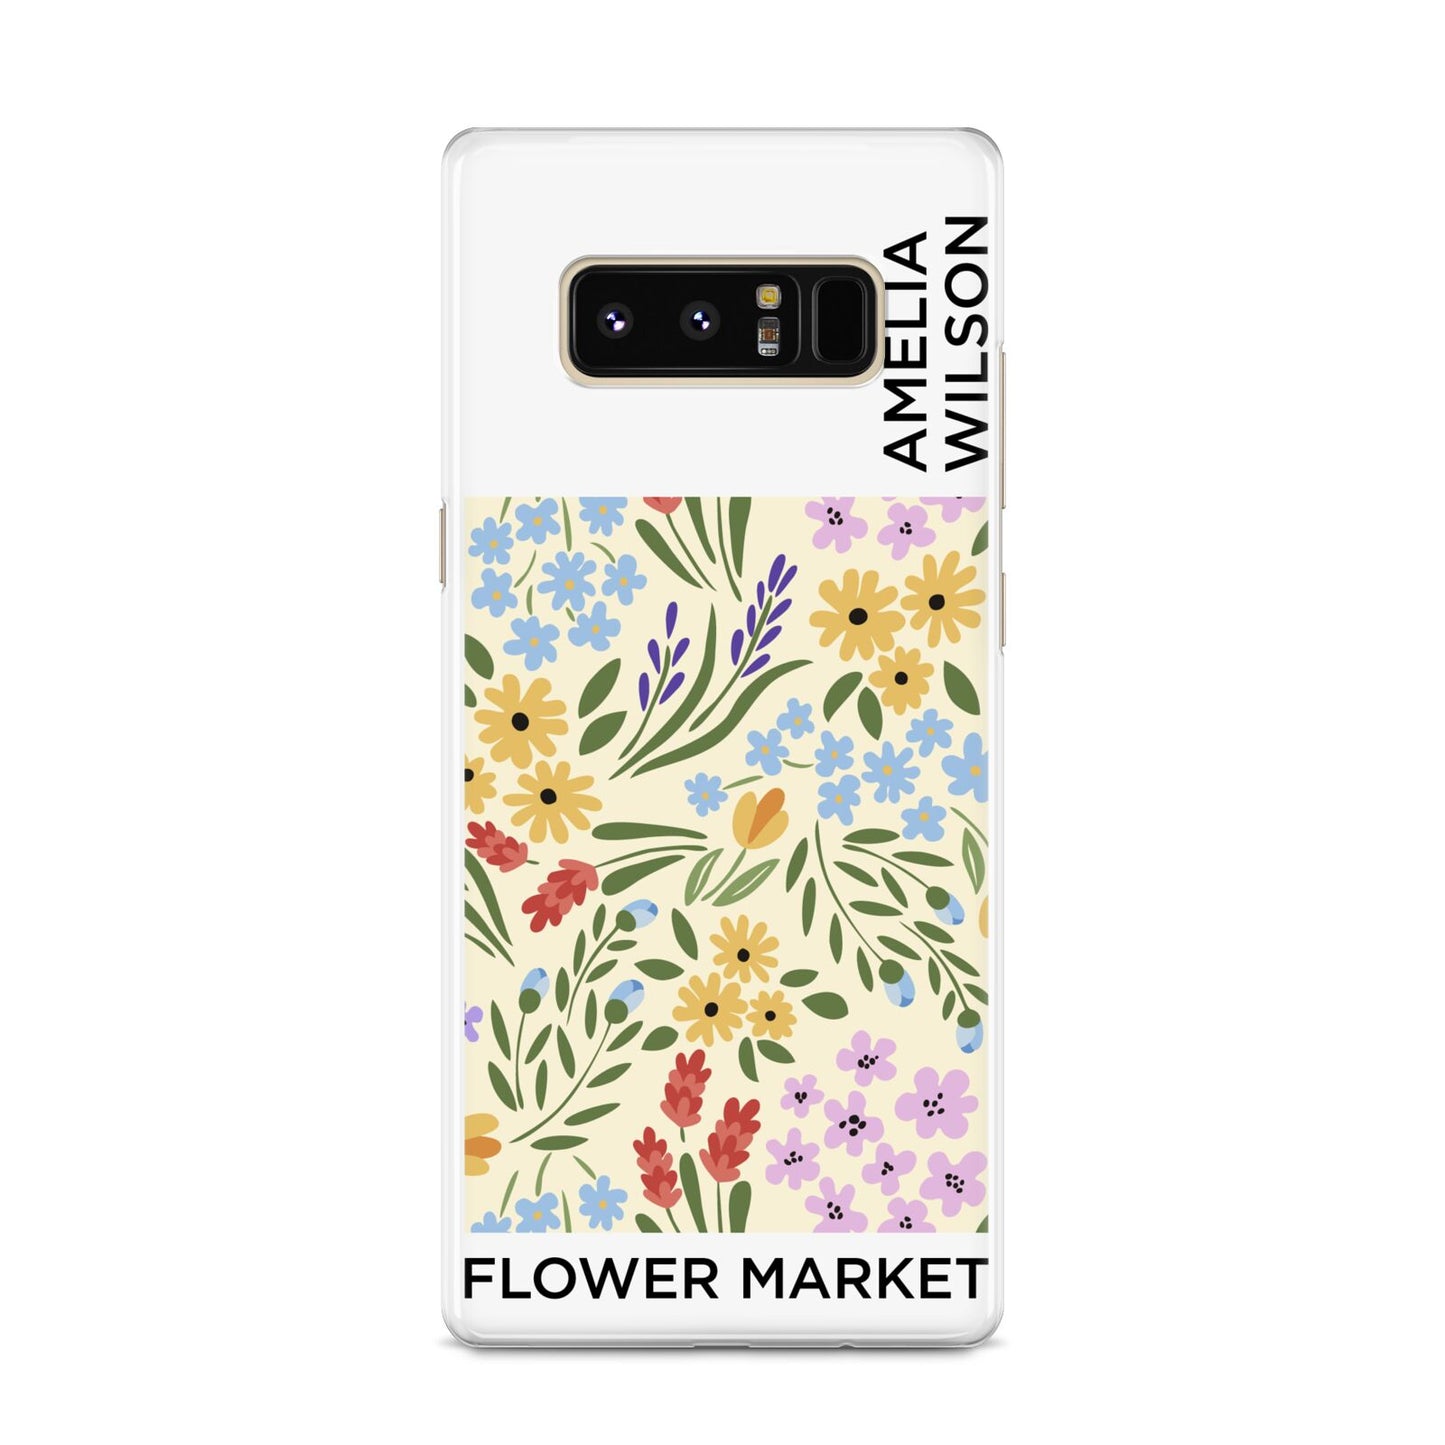 Paris Flower Market Samsung Galaxy S8 Case